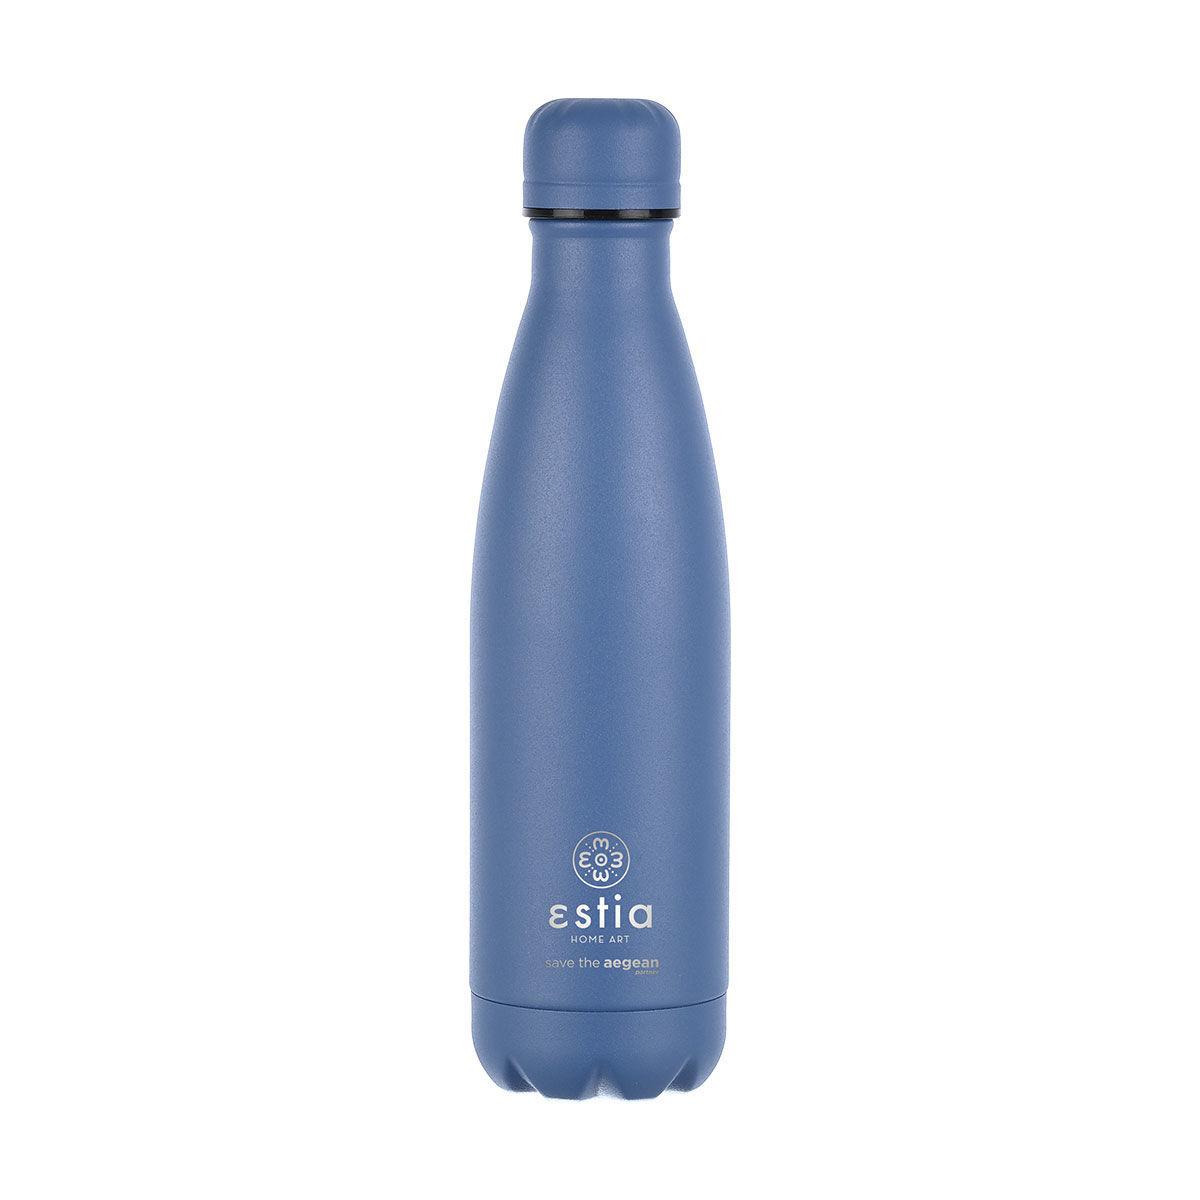 Θερμός-Μπουκάλι Ανοξείδωτο Flask Lite Save The Aegean Denim Blue Estia 500ml-7x7x26,6εκ. 01-18009 (Υλικό: Ανοξείδωτο, Χρώμα: Μπλε) – estia – 01-18009